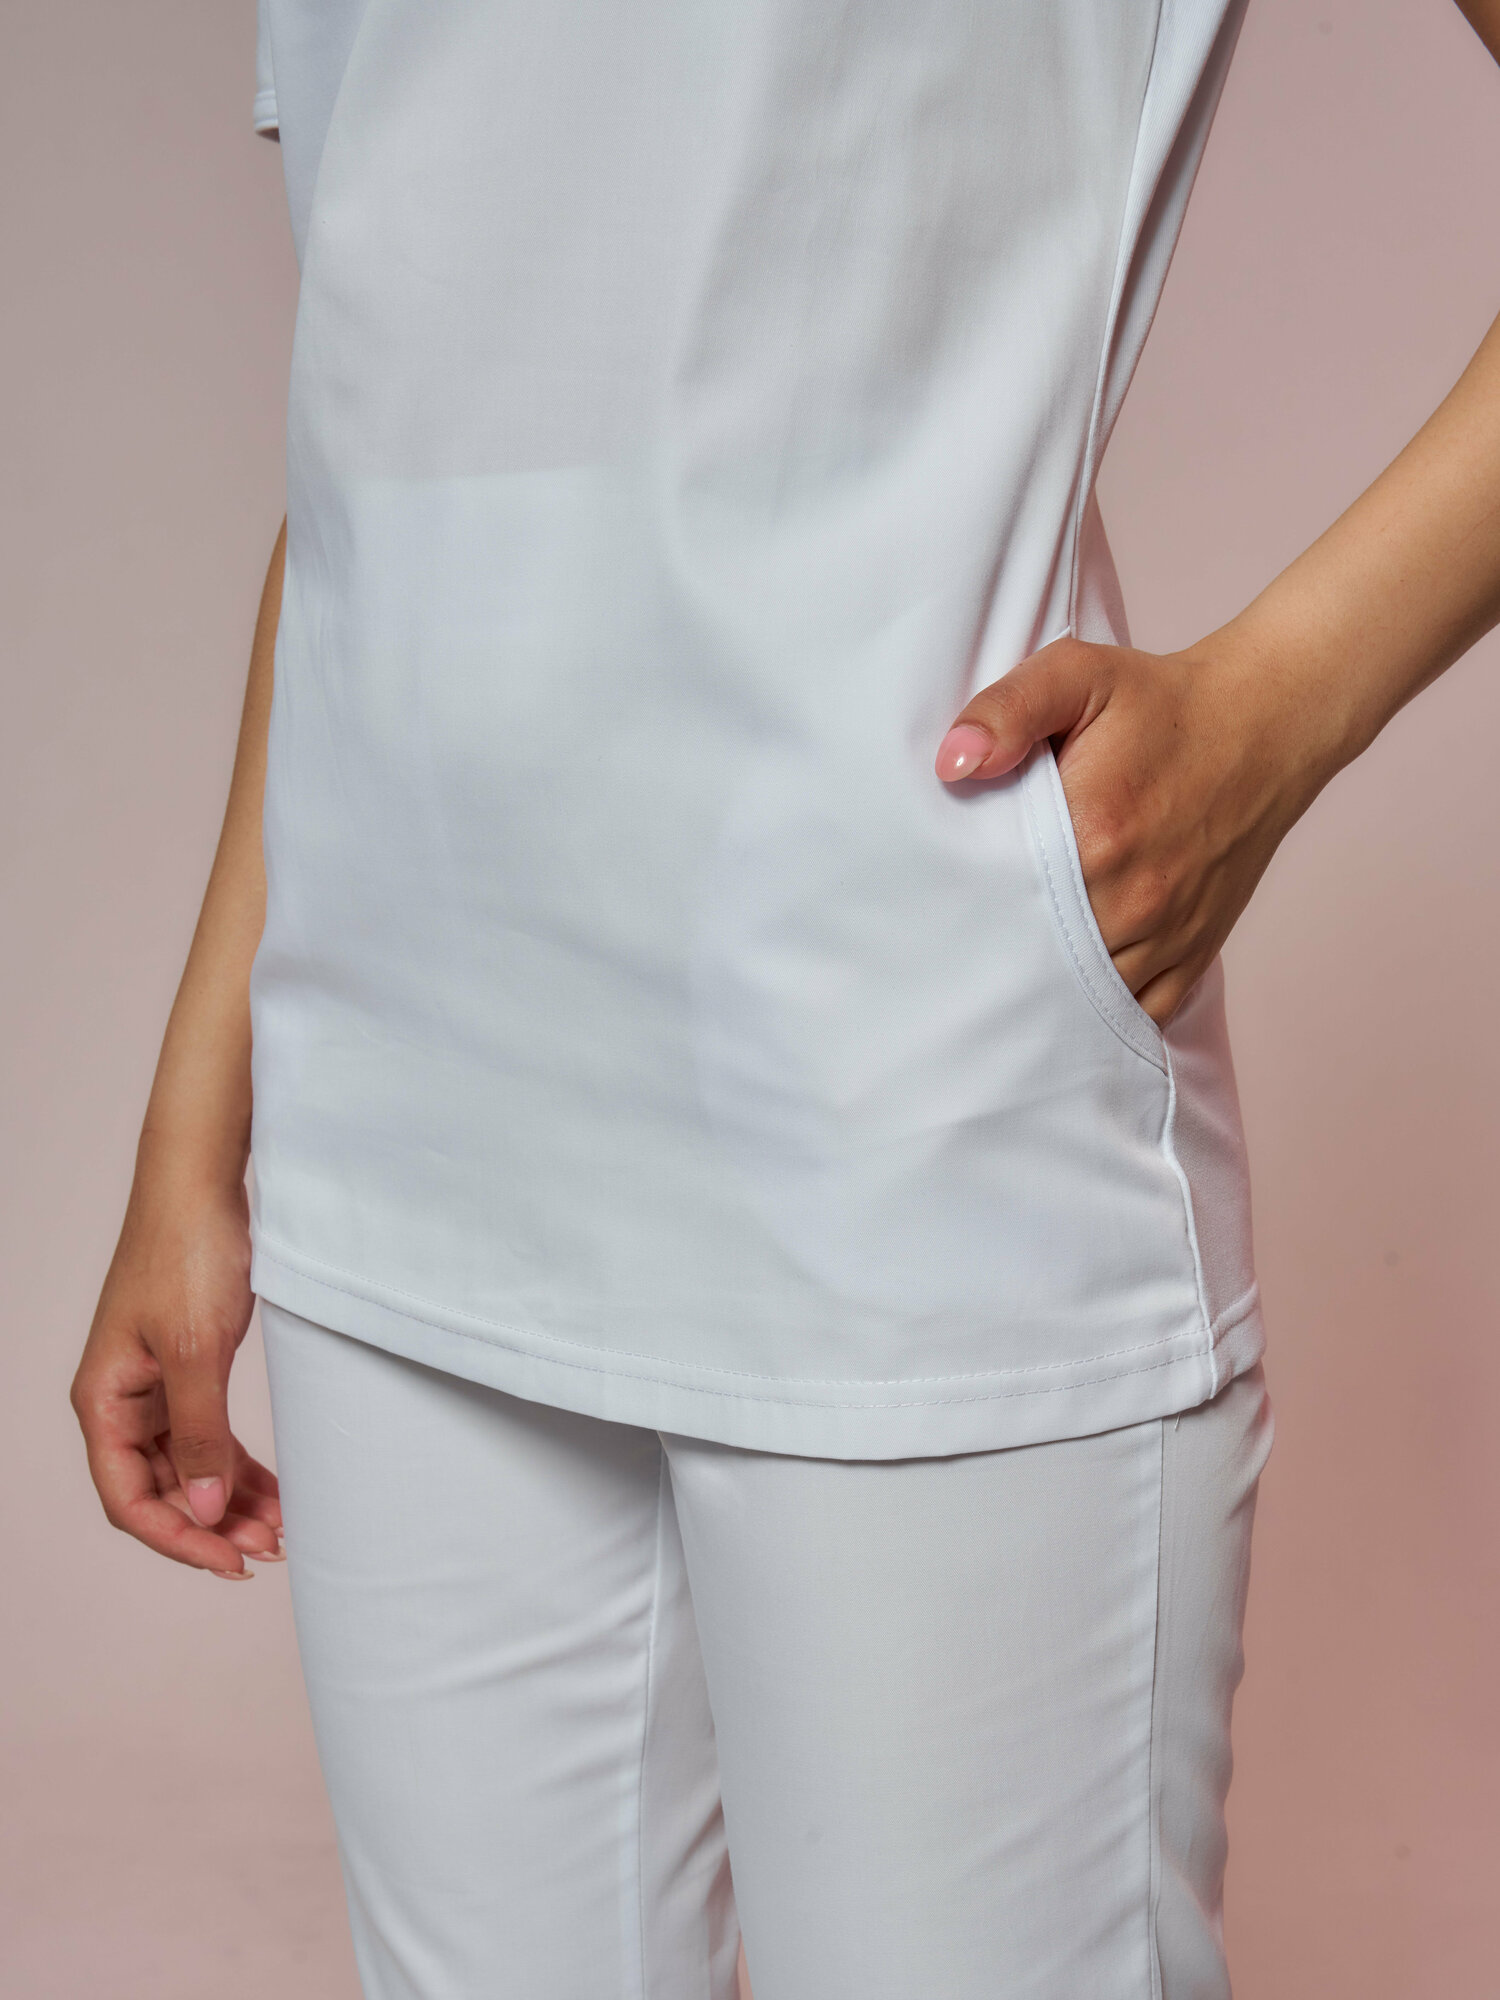 Медицинский костюм Альба-С женский белый. Хирургический костюм с трикотажем (стрейч, хлопок) больших размеров. Спецодежда для женщин (верх с брюками). Рабочий комплект одежды для врача. Размер 42